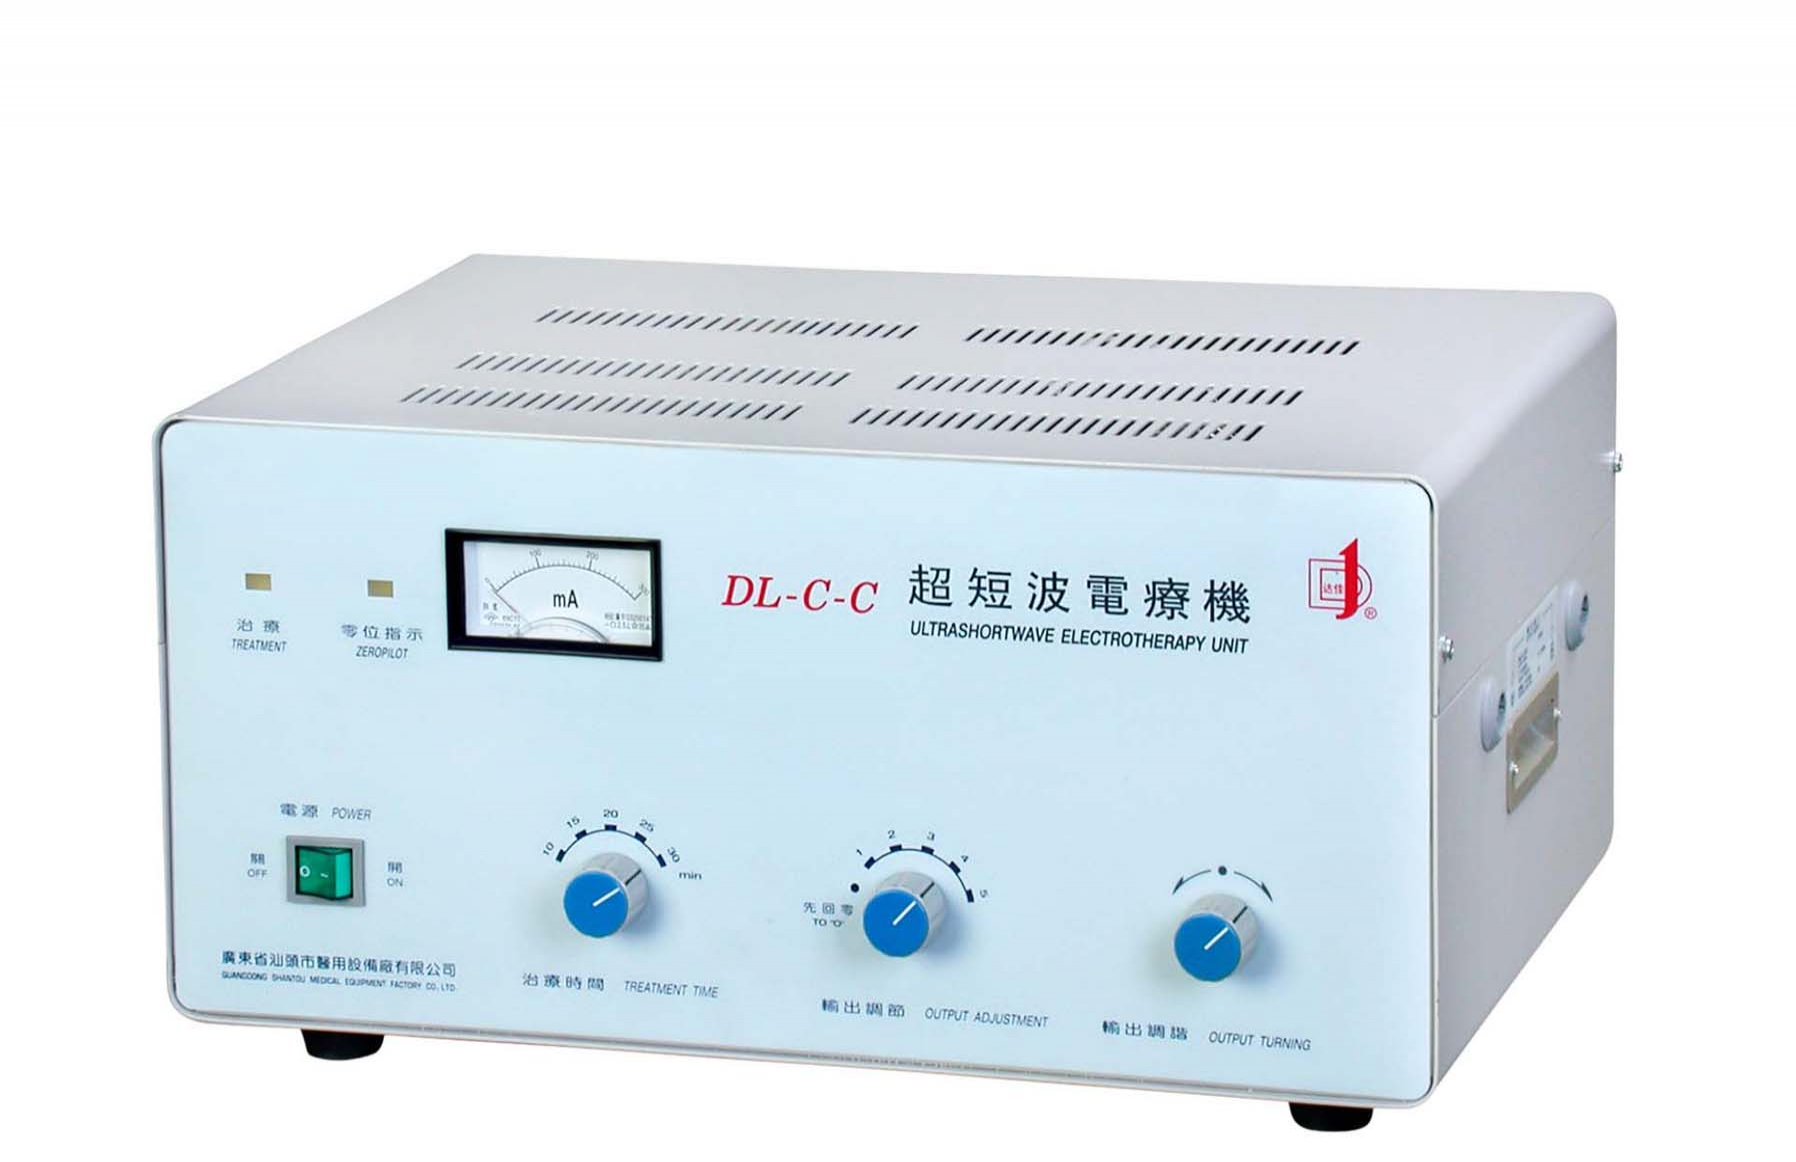 汕头达佳牌超短波电疗机DL-C-C